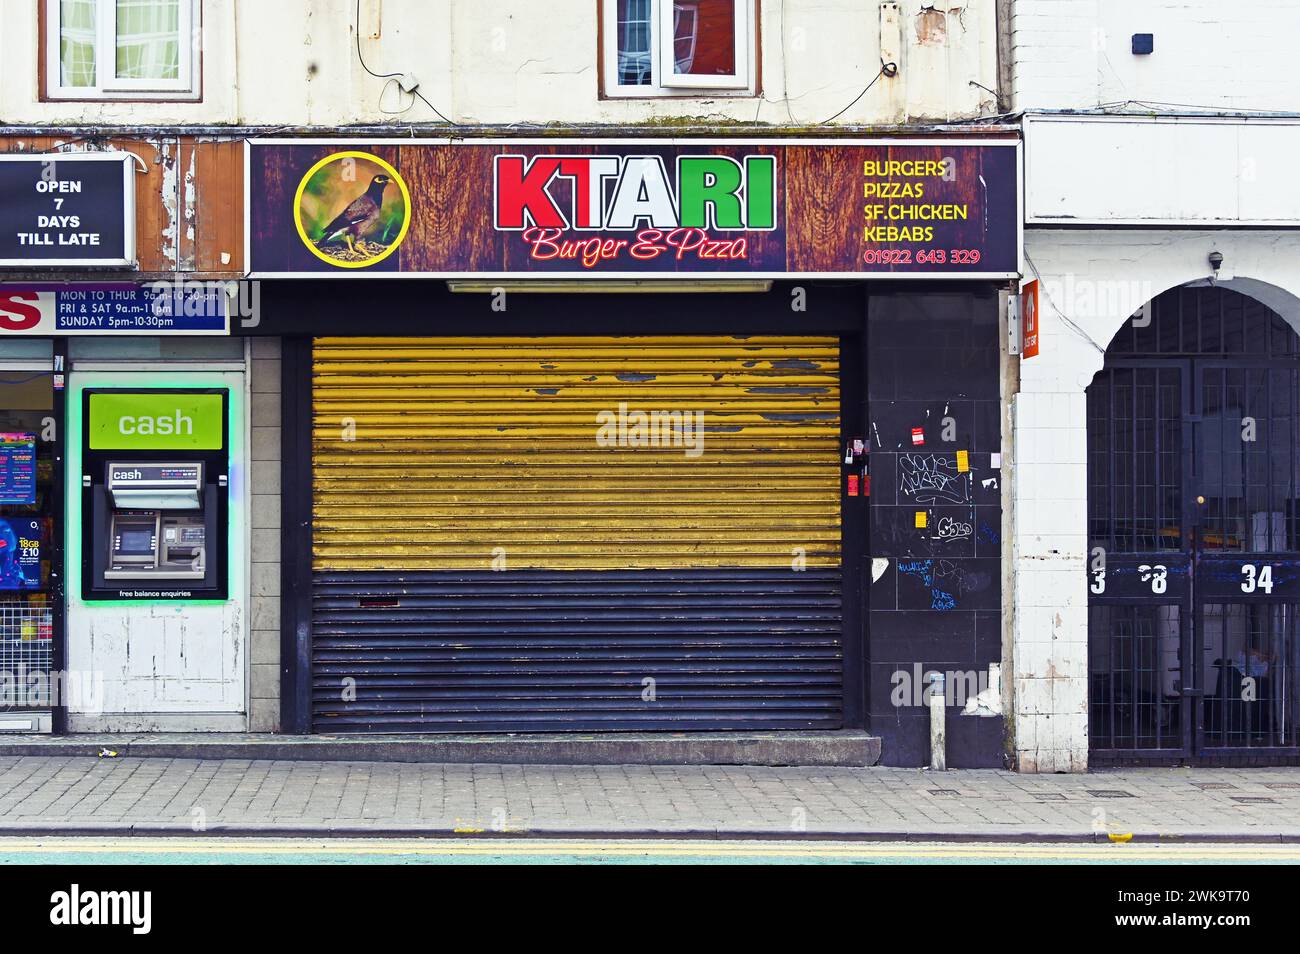 KTARI Burger & Pizza. Bridge Street, Walsall, West Midlands, England, United Kingdom, Europe. Stock Photo